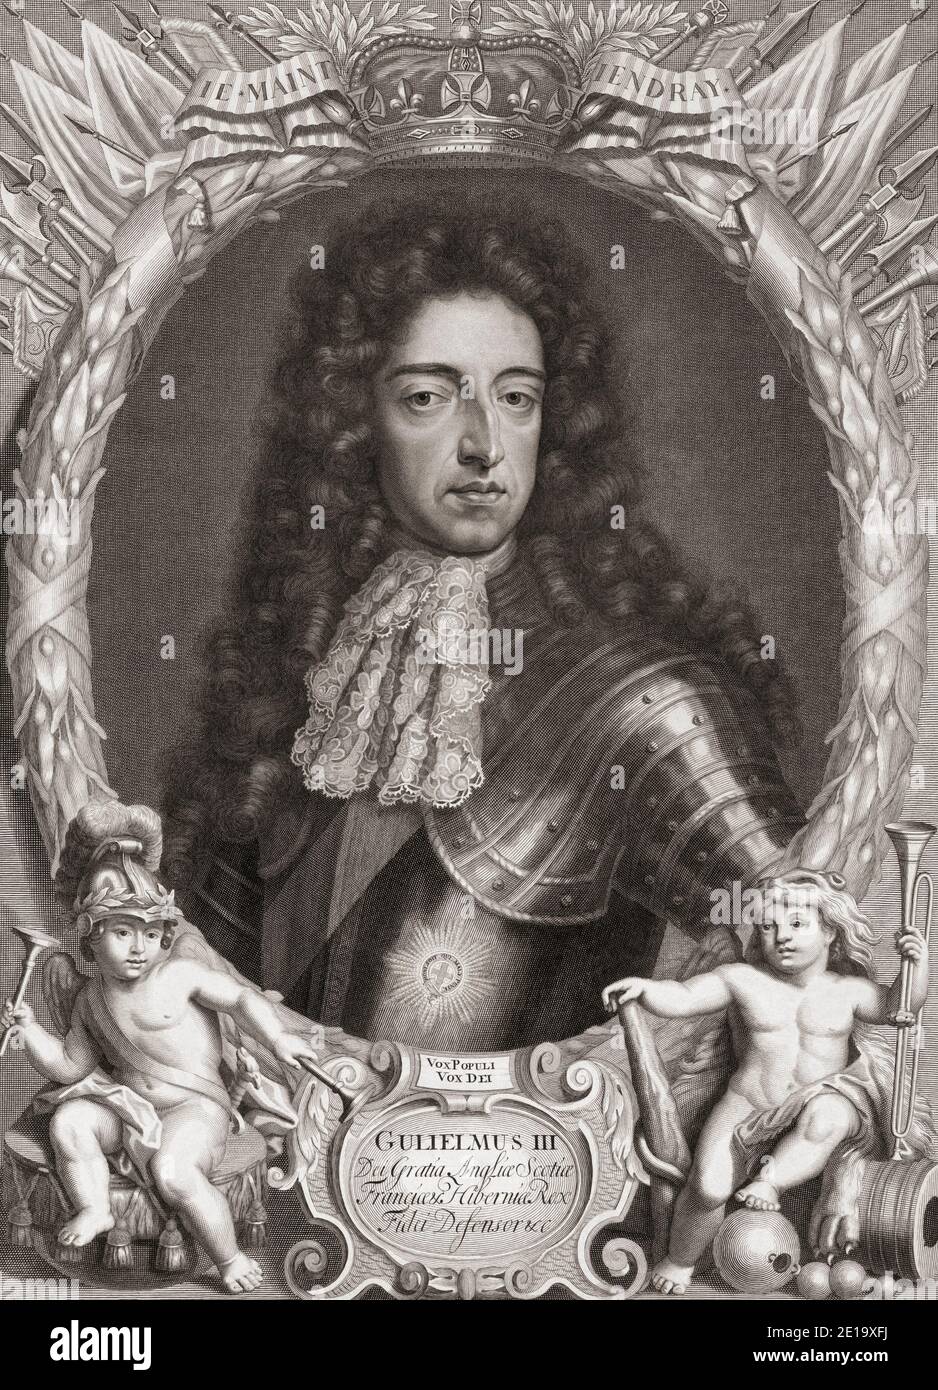 König Wilhelm III. Von England, 1650 bis 1702, Prinz von Oranien. Stadthalter der wichtigsten Provinzen der Niederländischen Republik. Nach einer Arbeit von Gottfried Kneller. Stockfoto